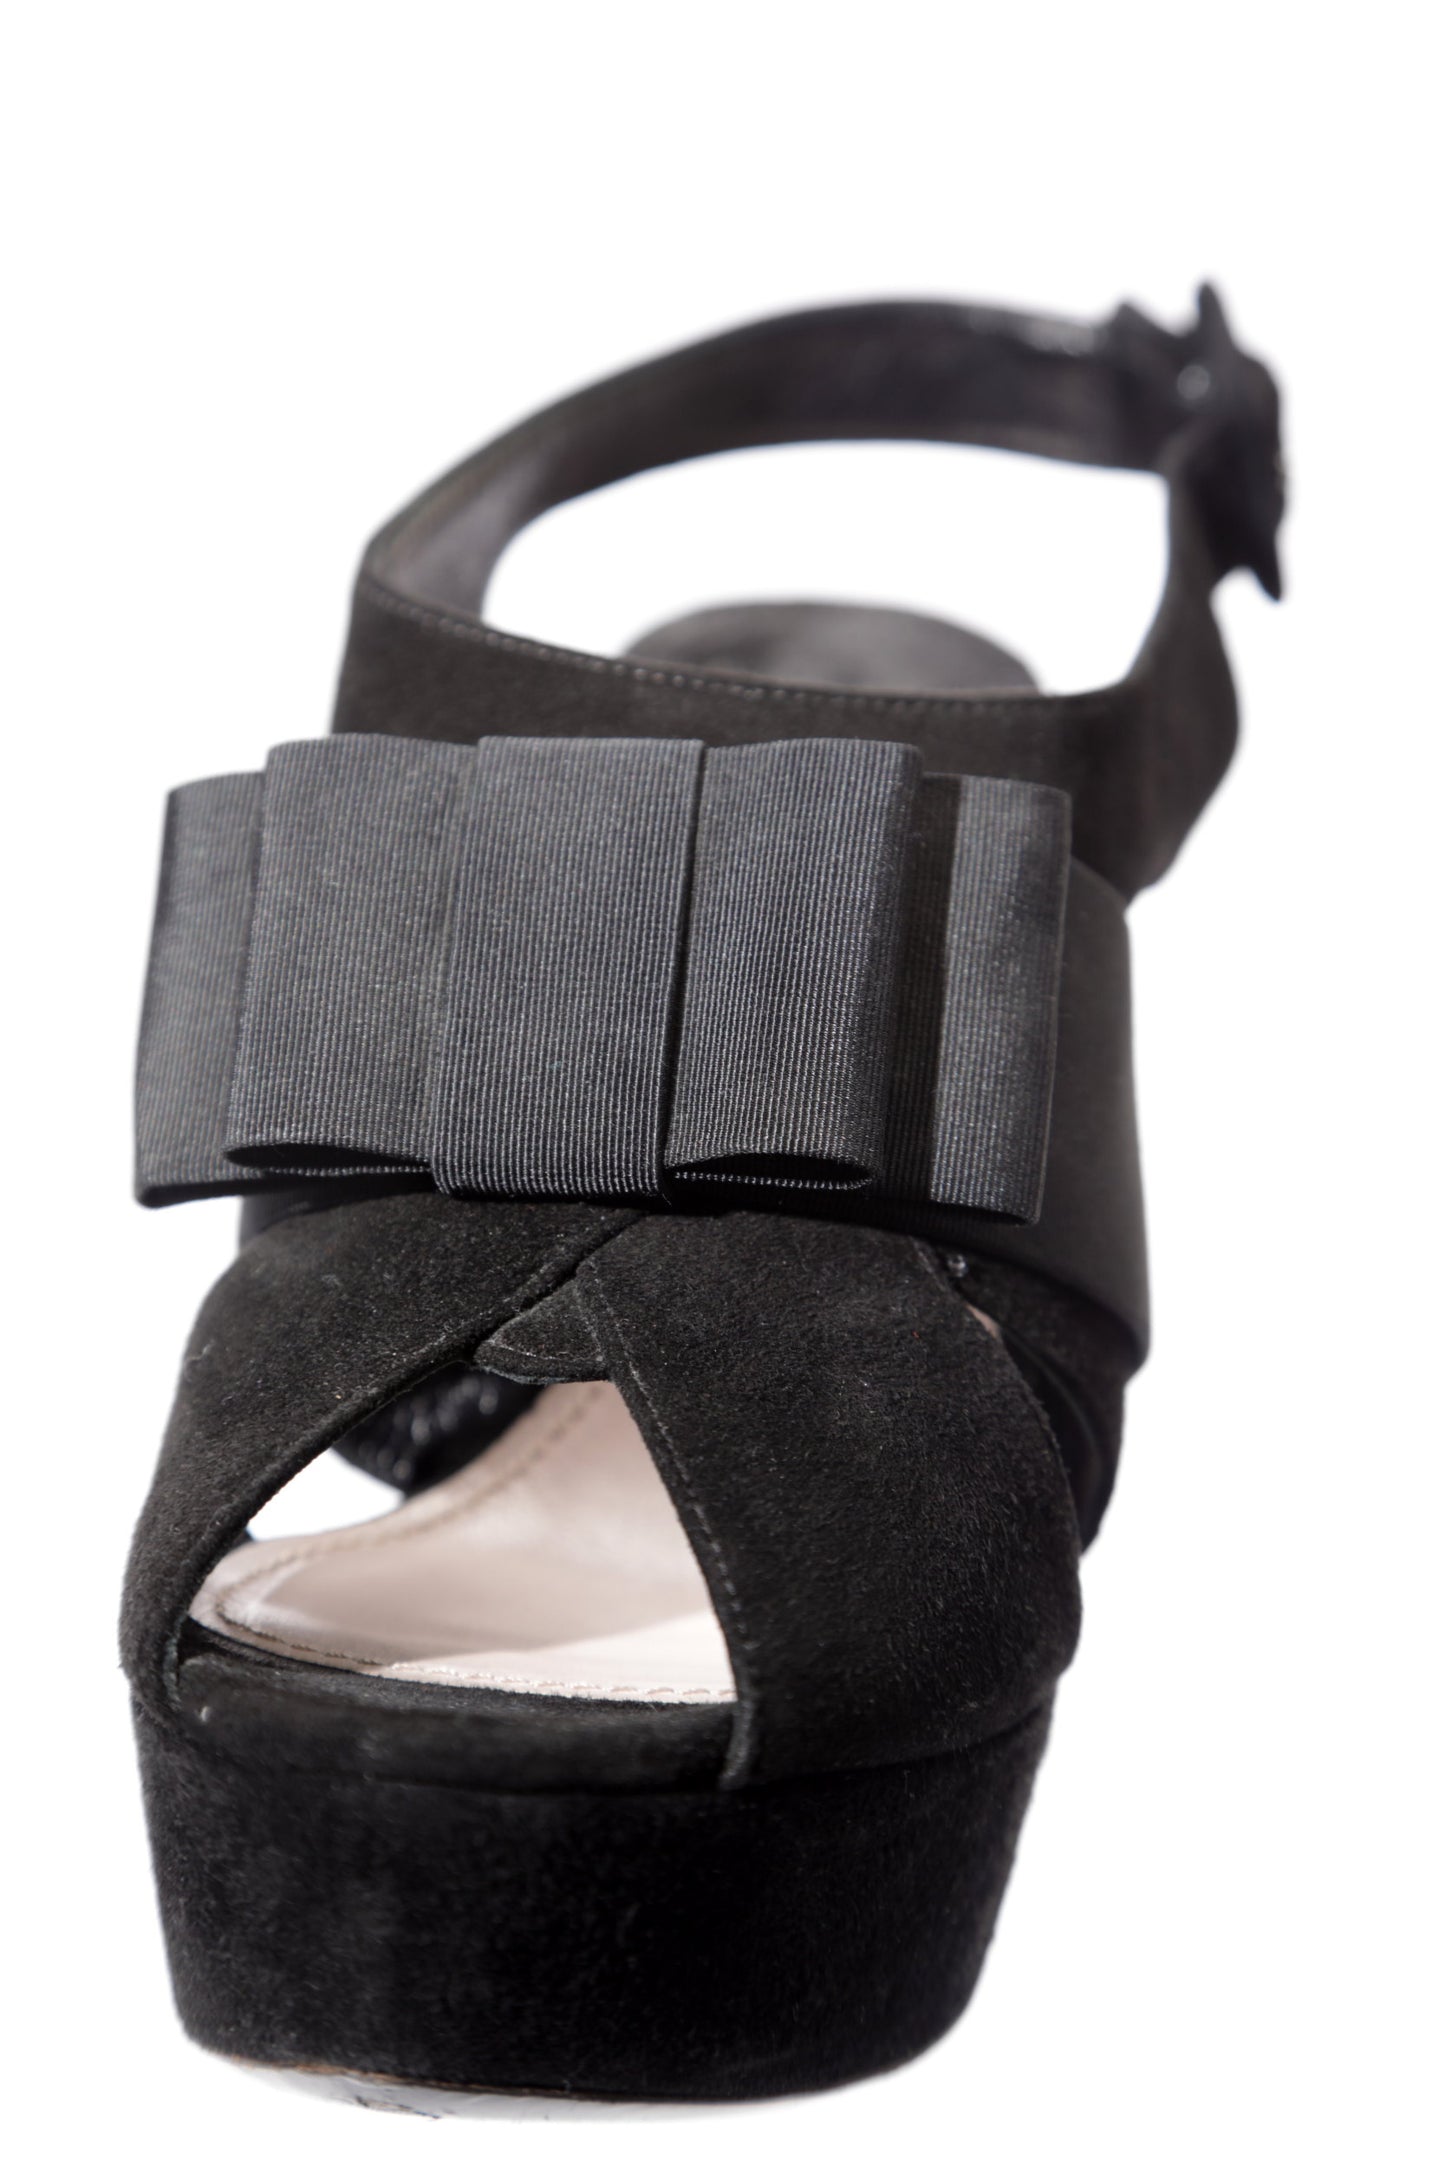 Miu Miu black suede sandal